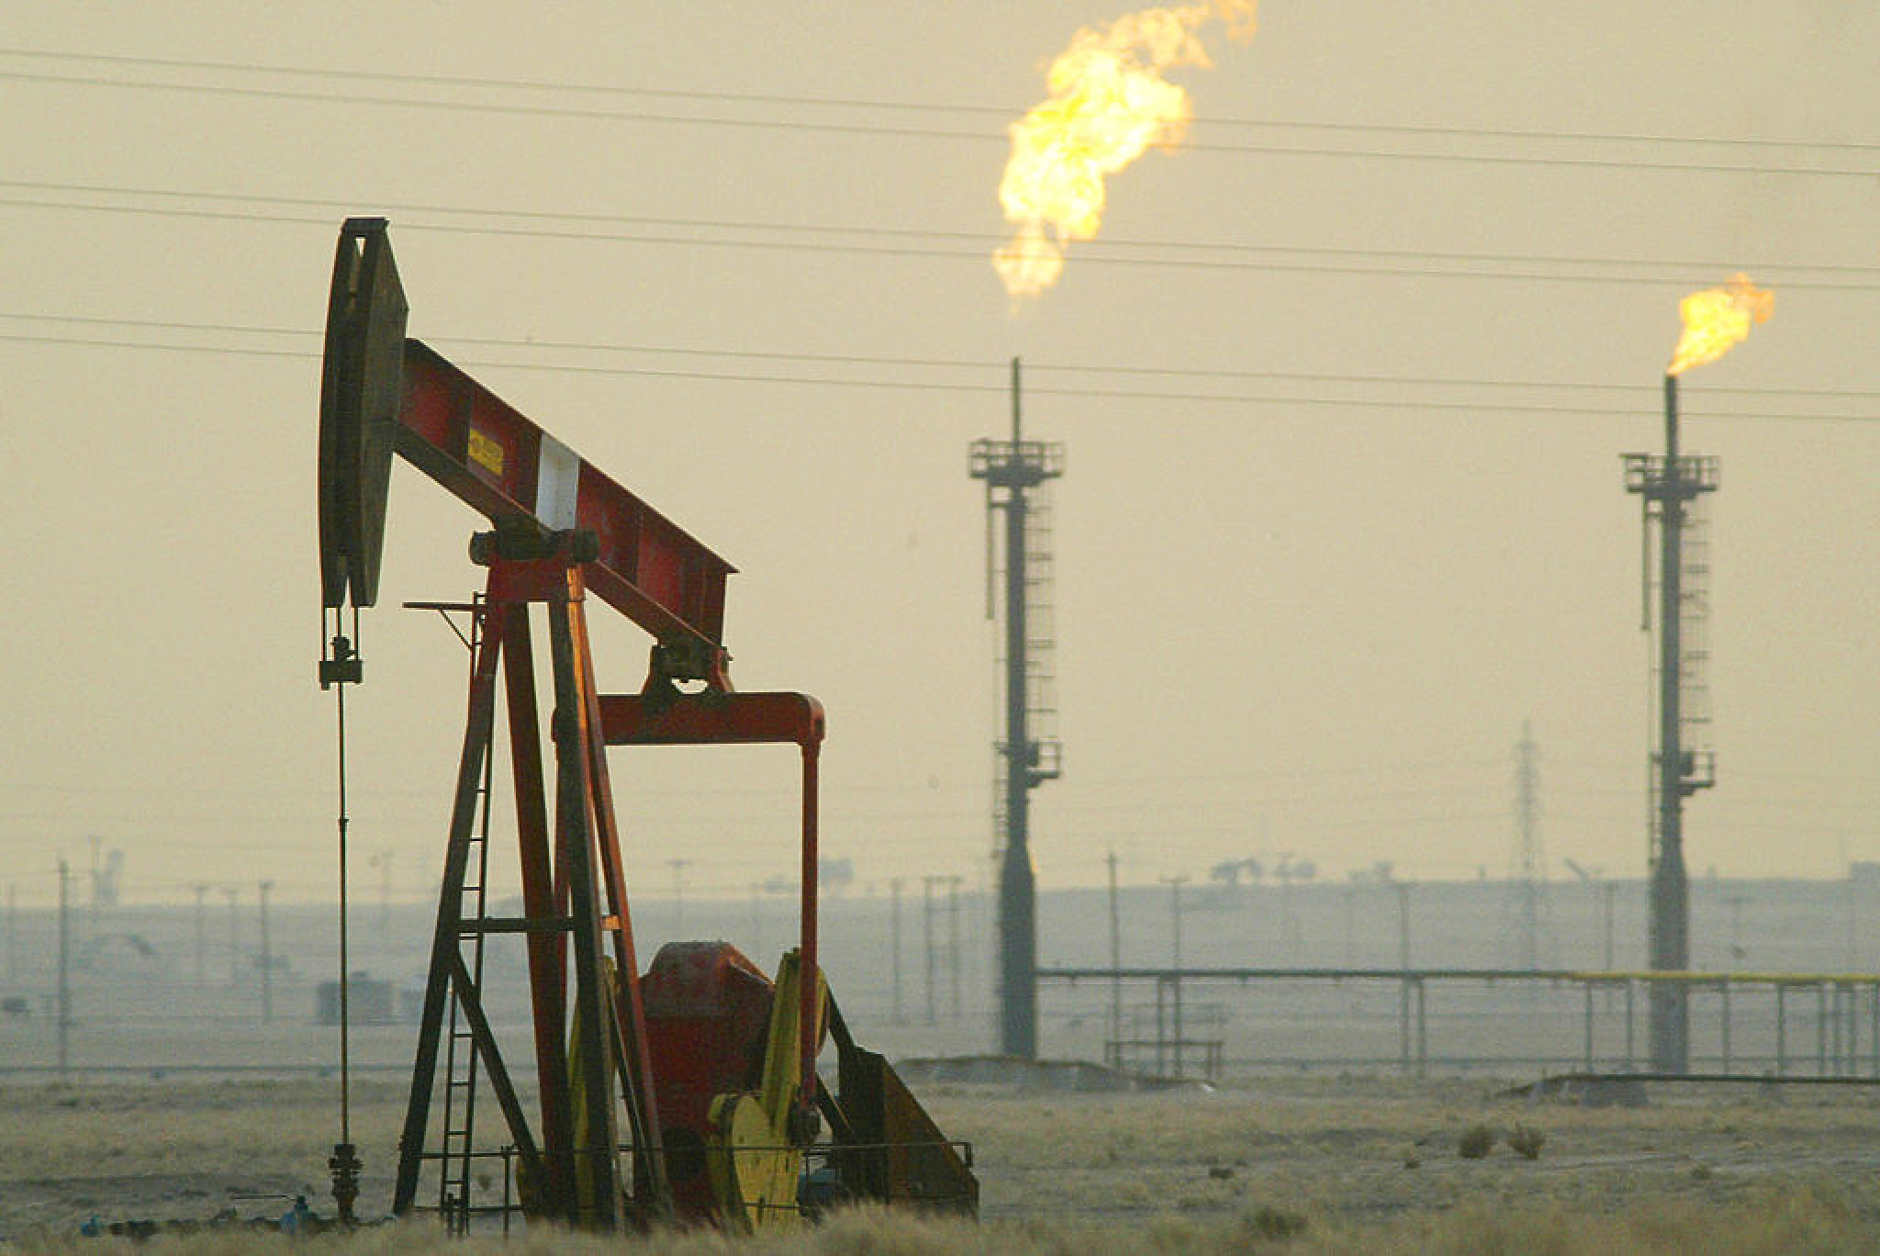 Петролът се стабилизира, като фокусът остава фърху геополитическия риск в Близкия изток